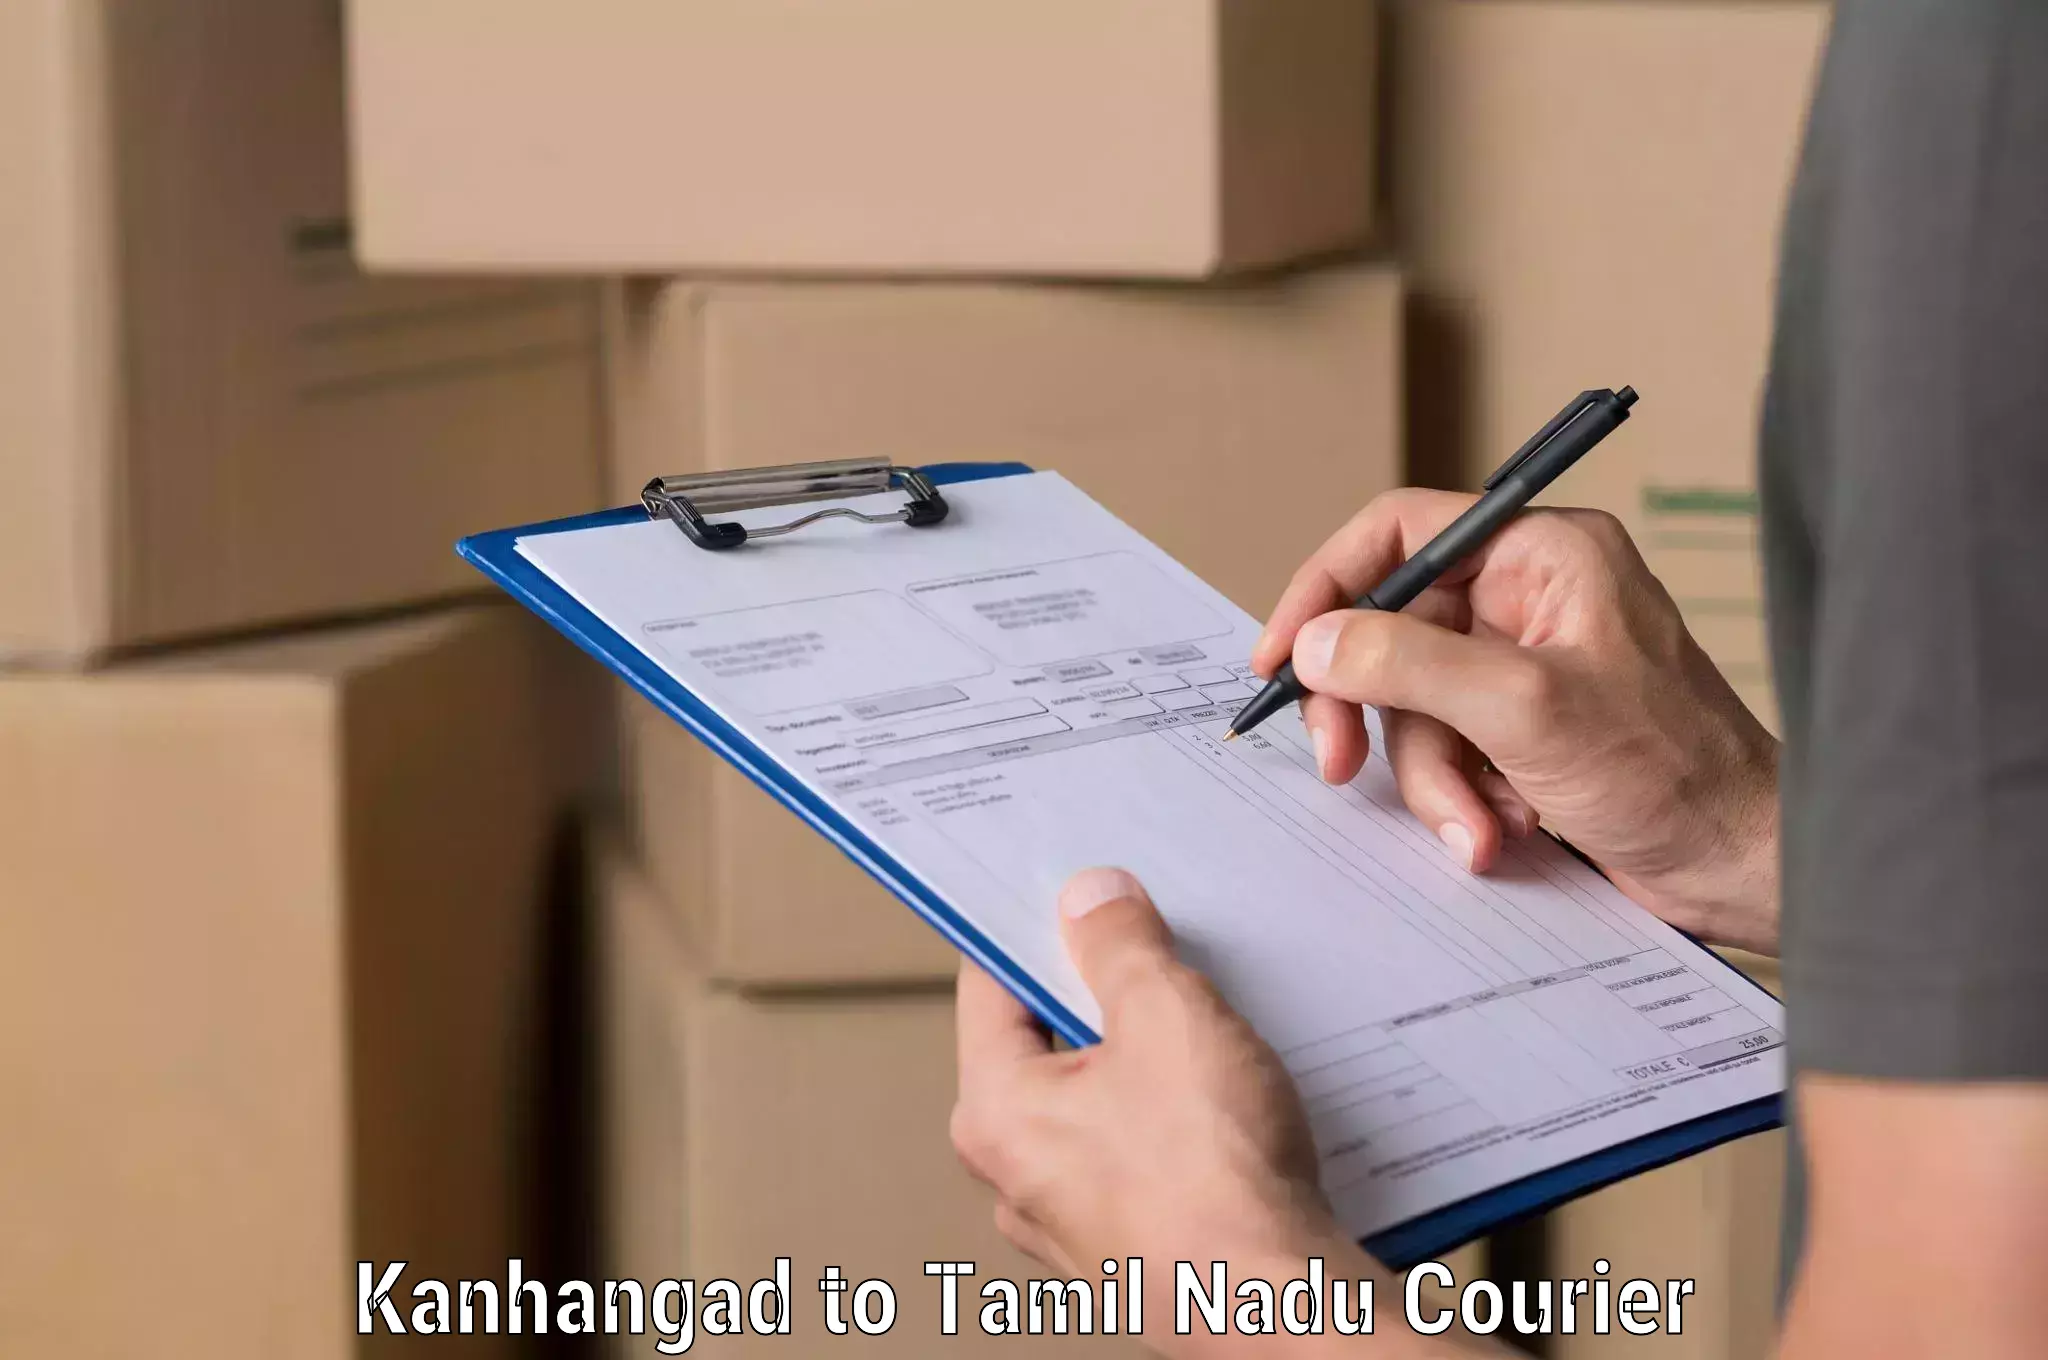 Efficient logistics management in Kanhangad to Tiruchengodu